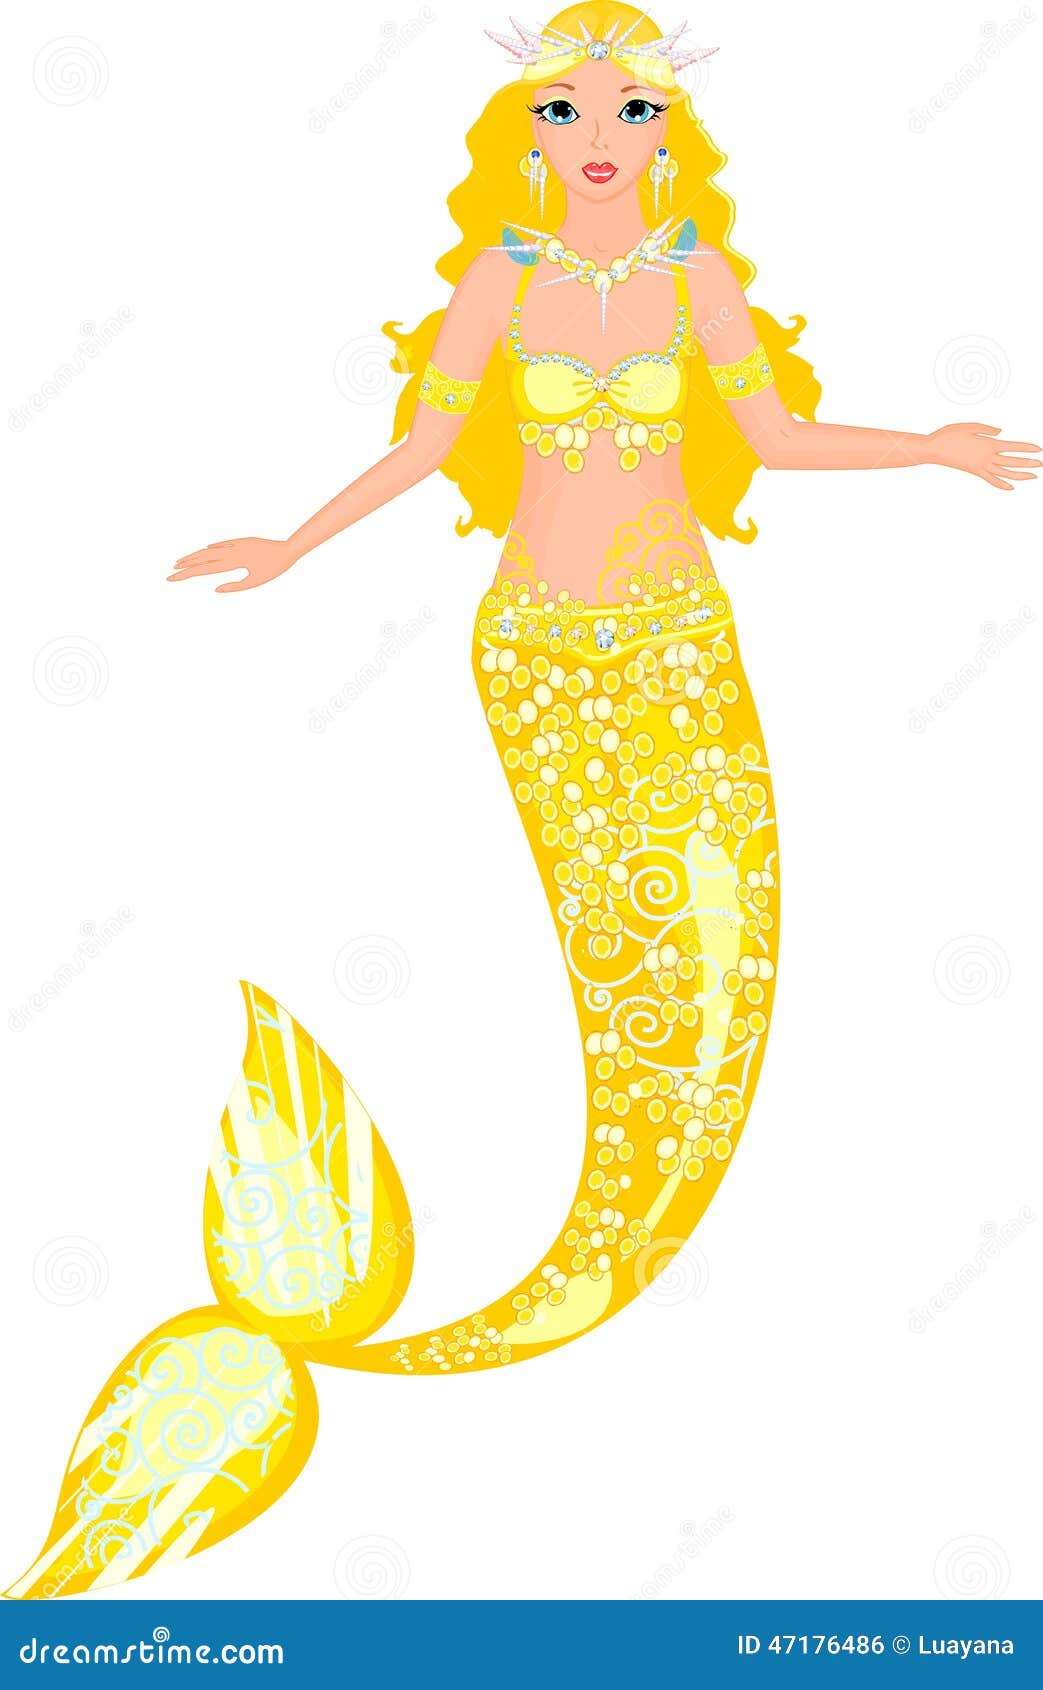 Mermaid stock vector. Illustration of nixie, golden, seamaiden - 47176486